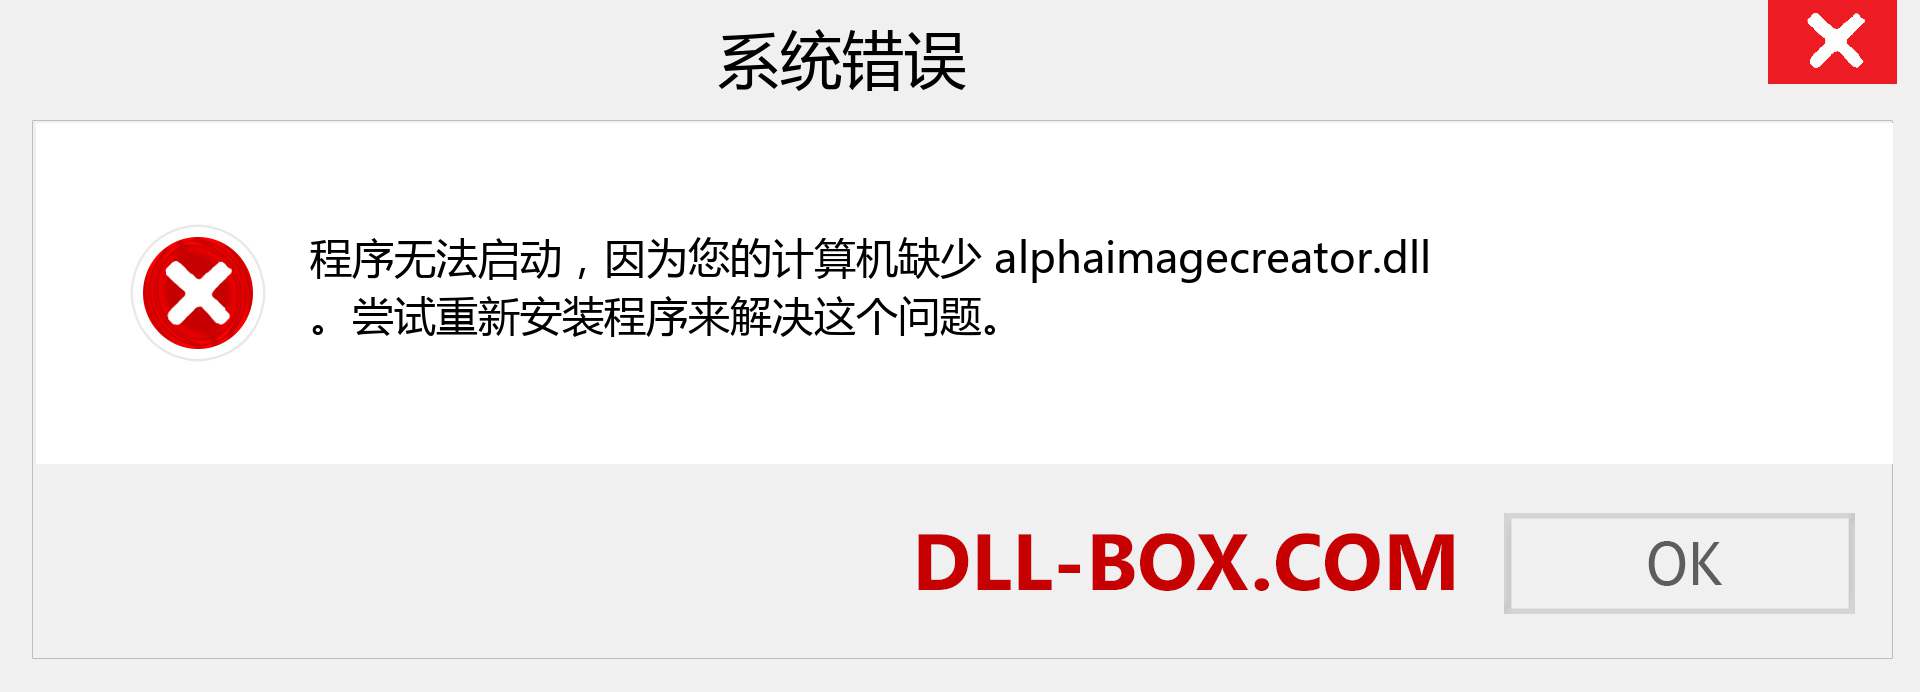 alphaimagecreator.dll 文件丢失？。 适用于 Windows 7、8、10 的下载 - 修复 Windows、照片、图像上的 alphaimagecreator dll 丢失错误